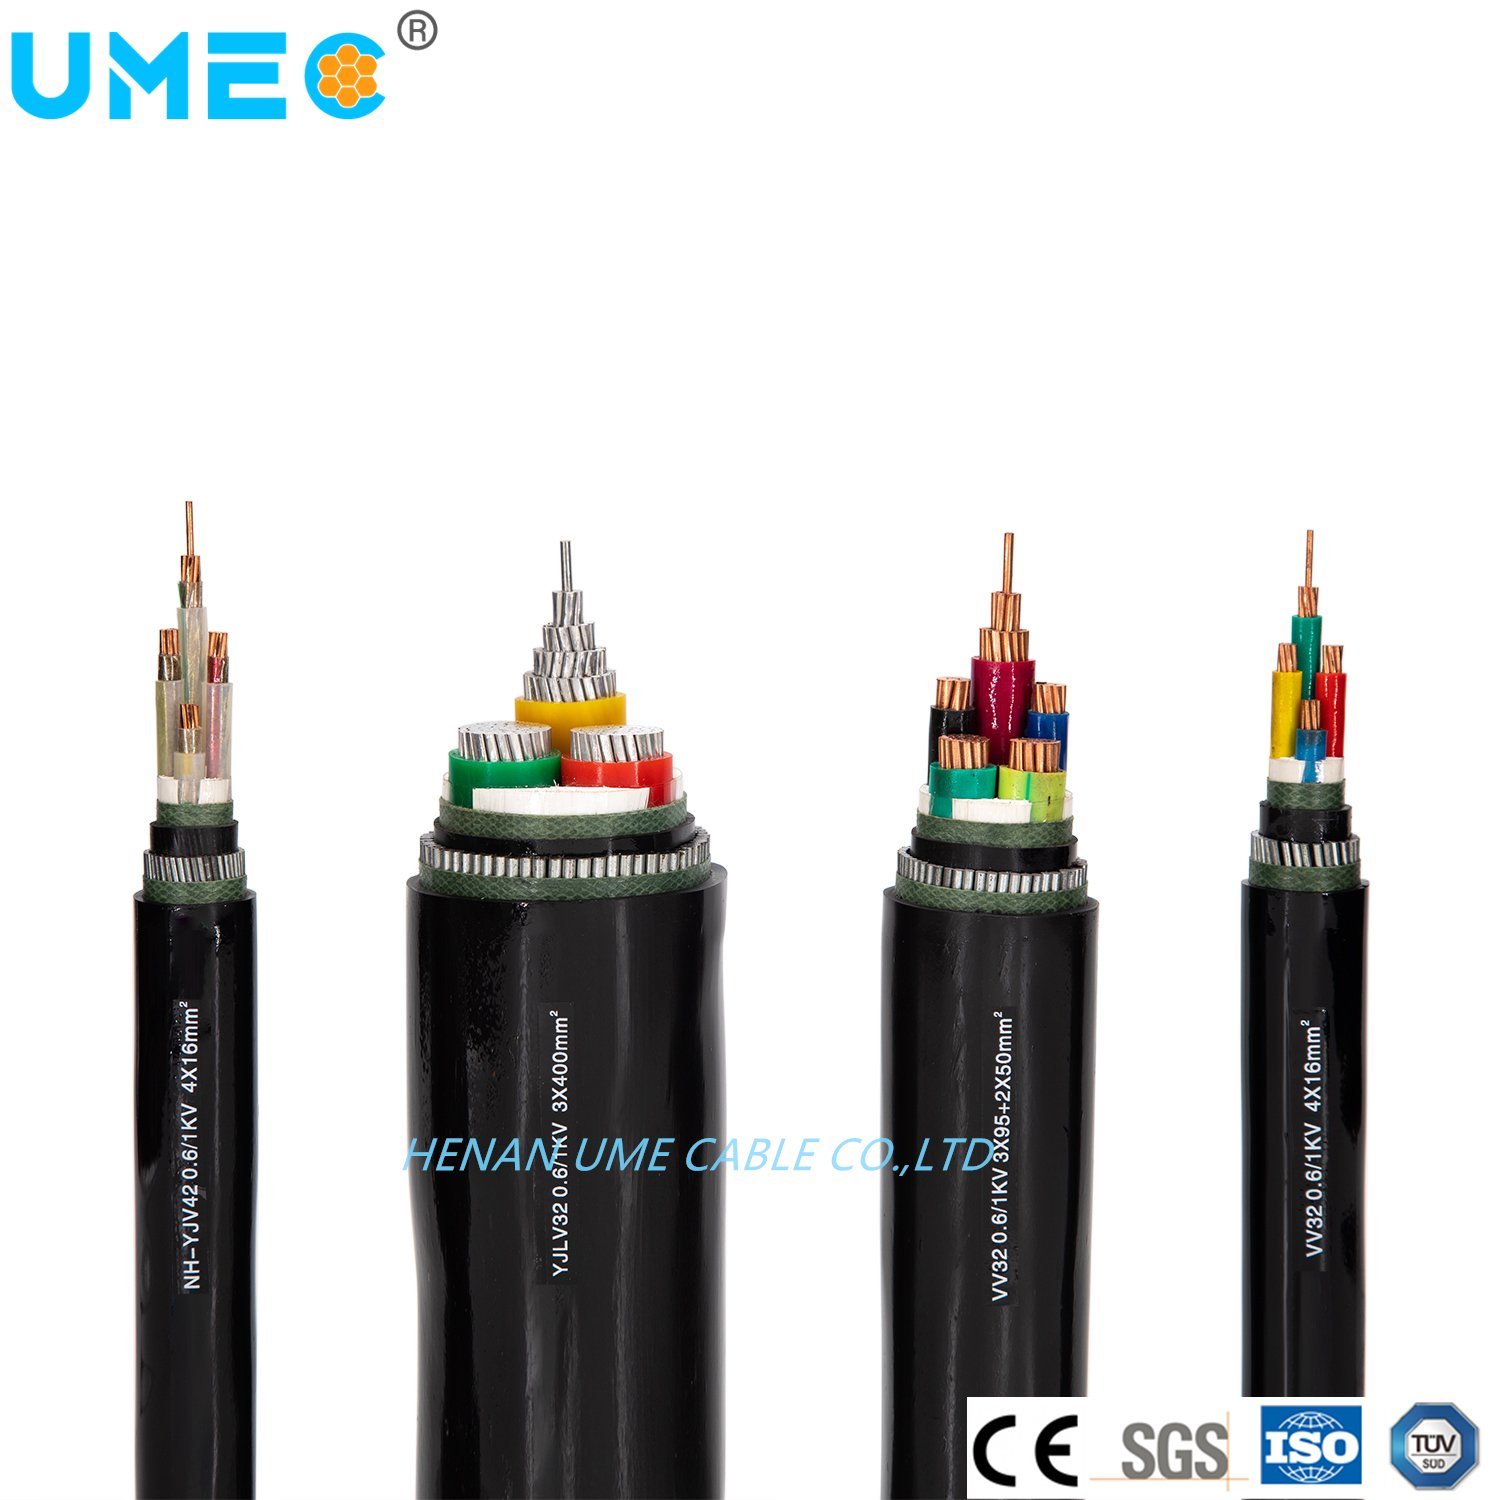 
                4 Core + 1 Massa do cabo de alimentação de baixa voltagem Cu/Al cabo eléctrico
            